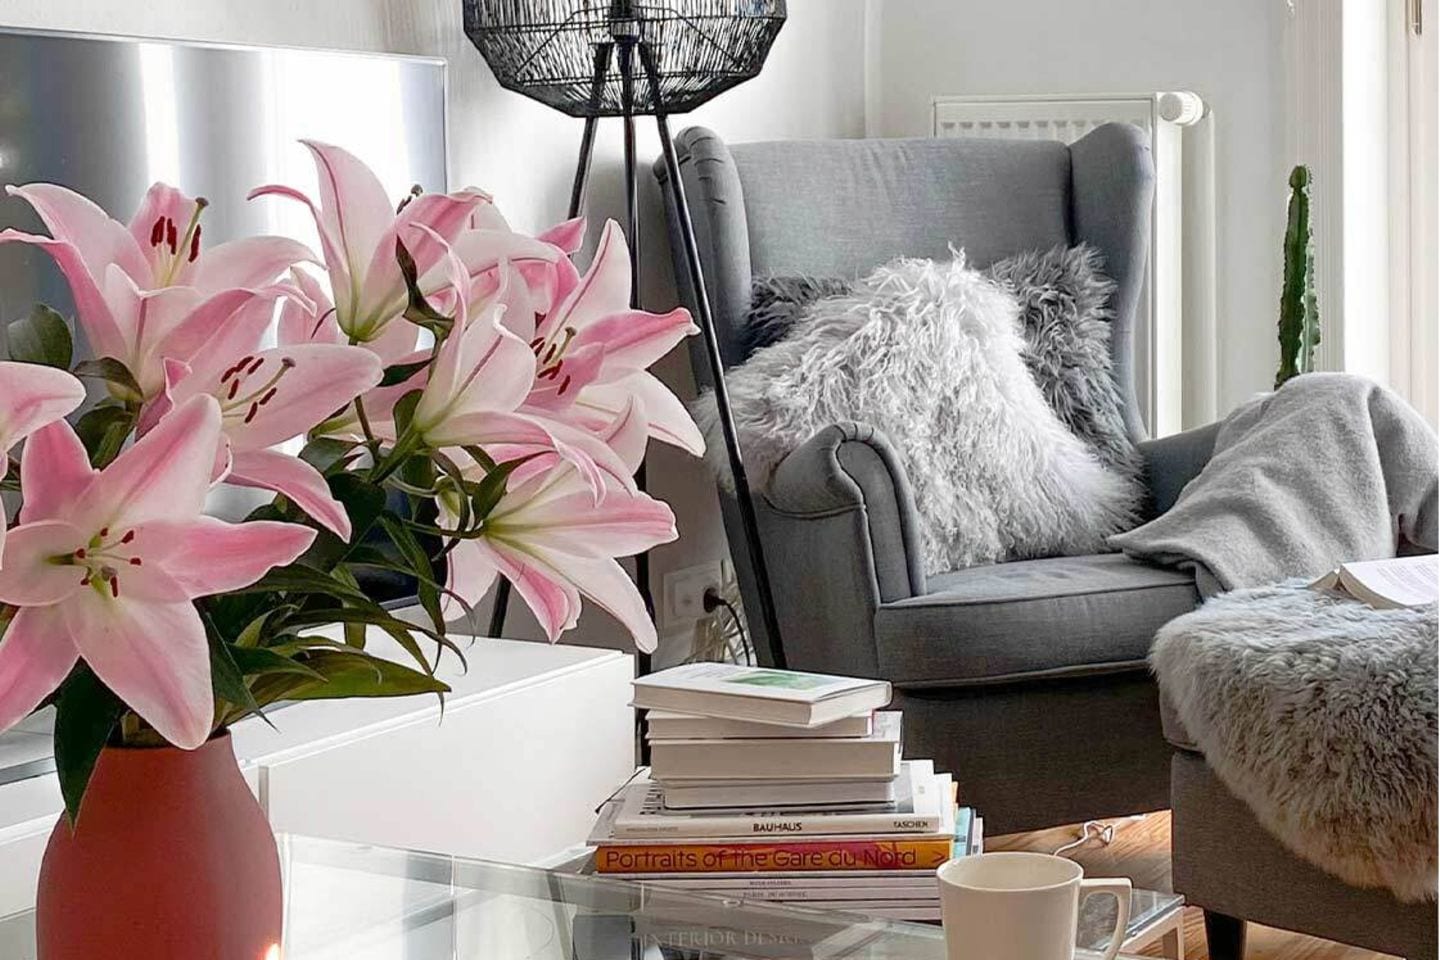 Cozy eingerichtetes Wohnzimmer mit dem Ohrensessel von Ikea, einer Stehleuchte, Lilien, Kerzen und vielem mehr